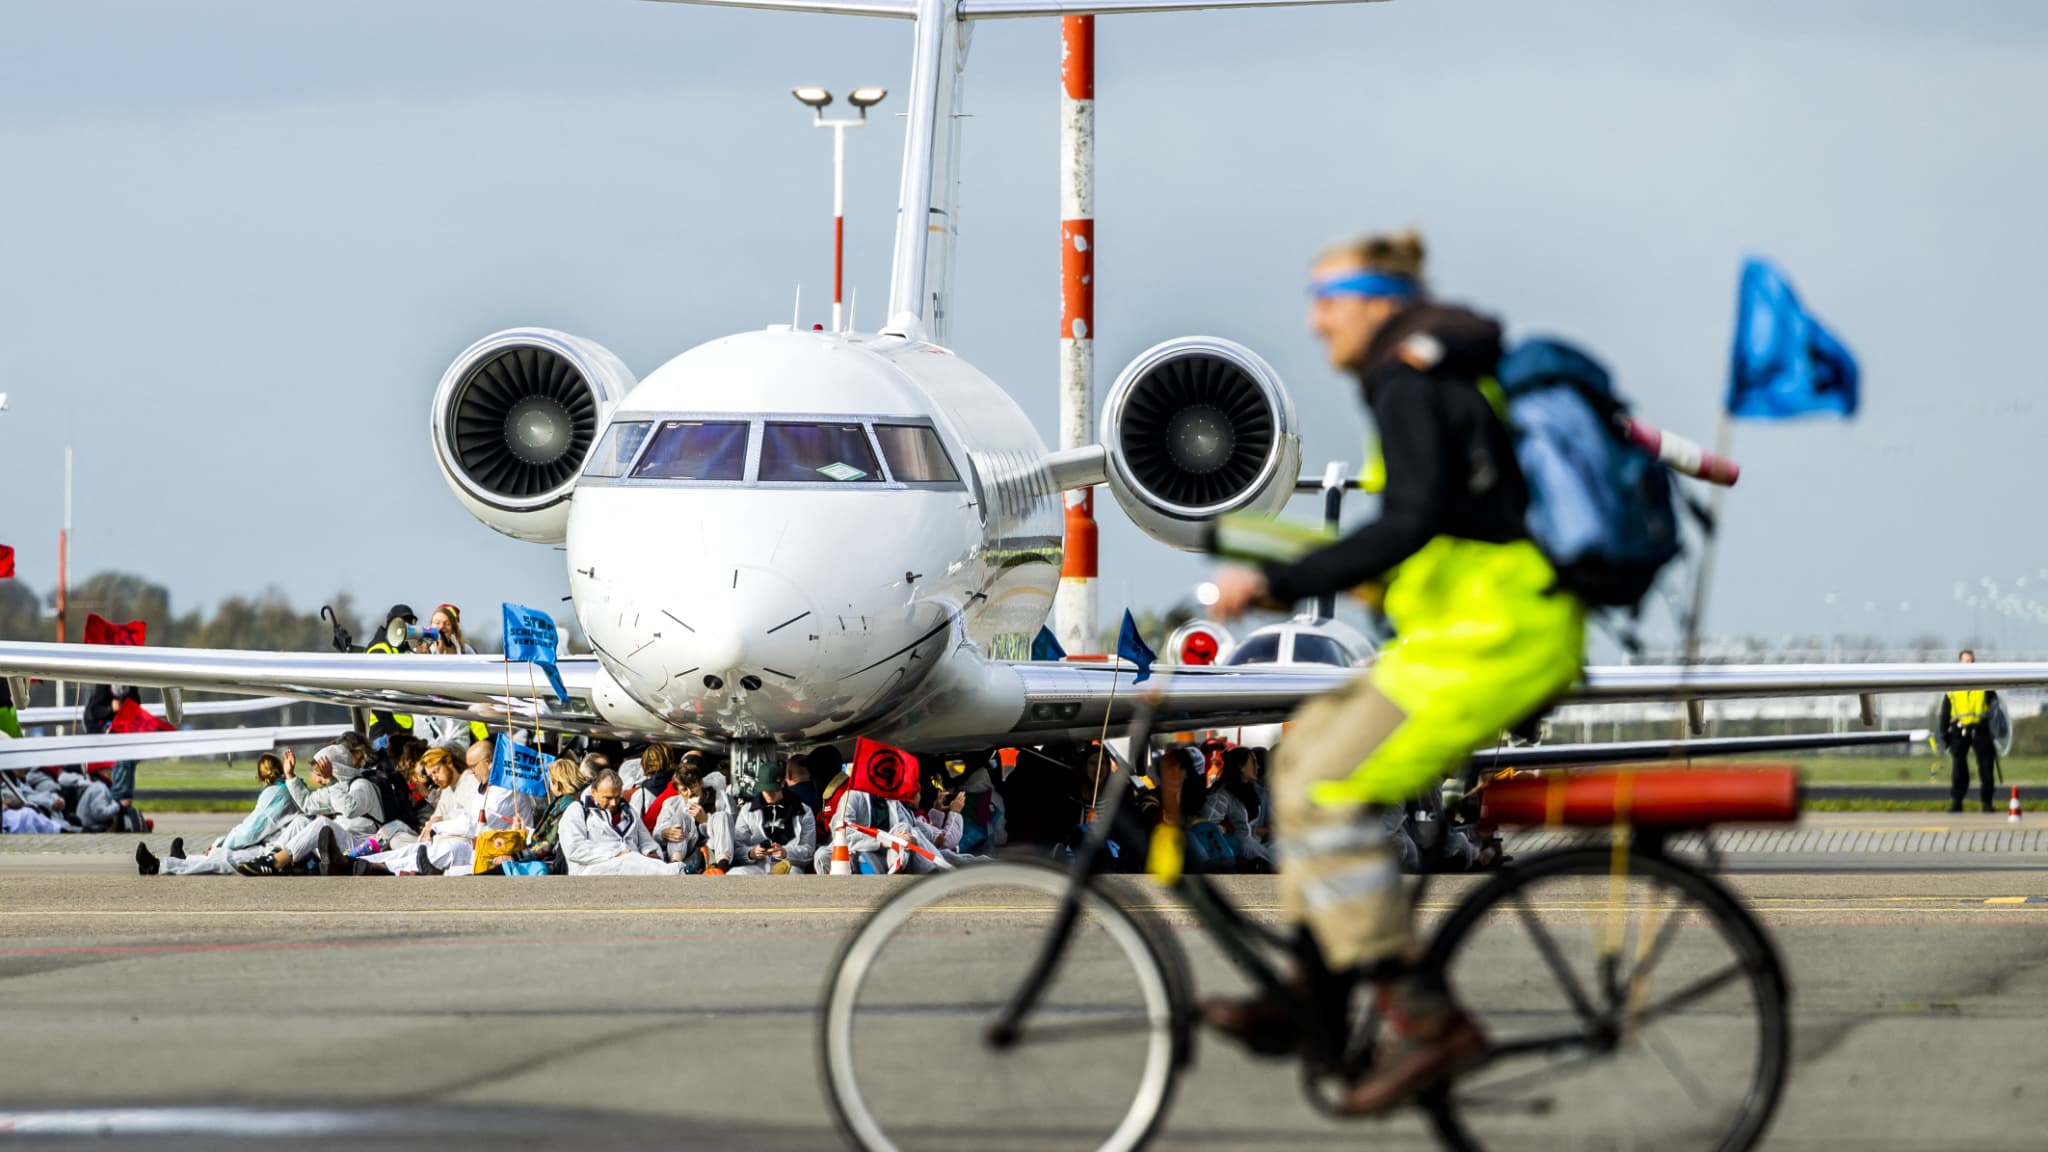 Milieuactivisten hebben voorkomen dat privéjets opstijgen vanaf Amsterdam Airport